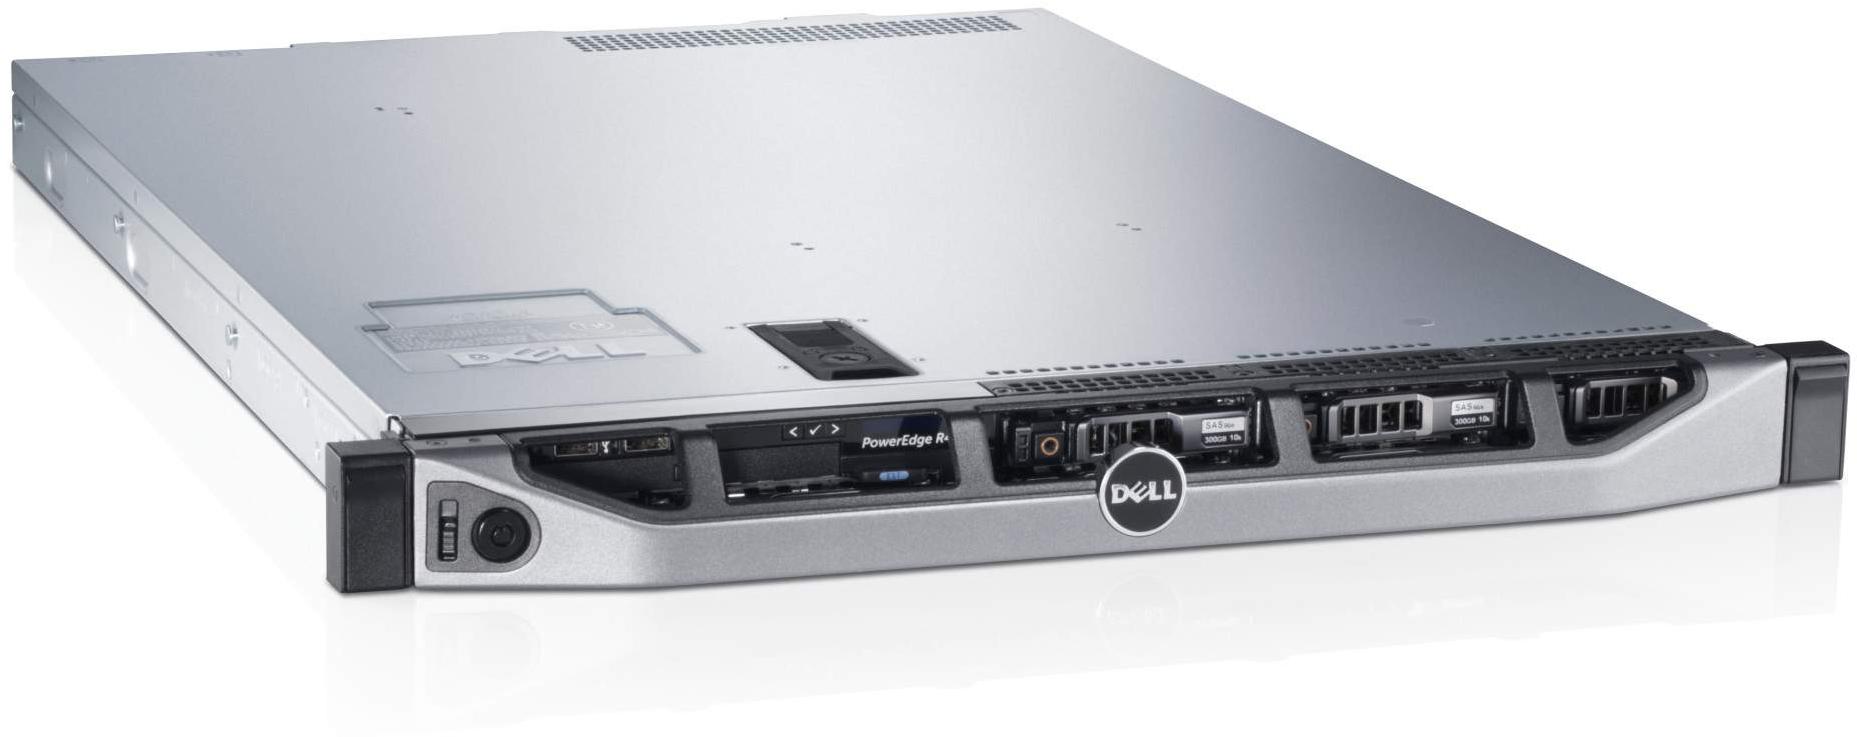     Dell PowerEdge R620 (210-39504-95)  2